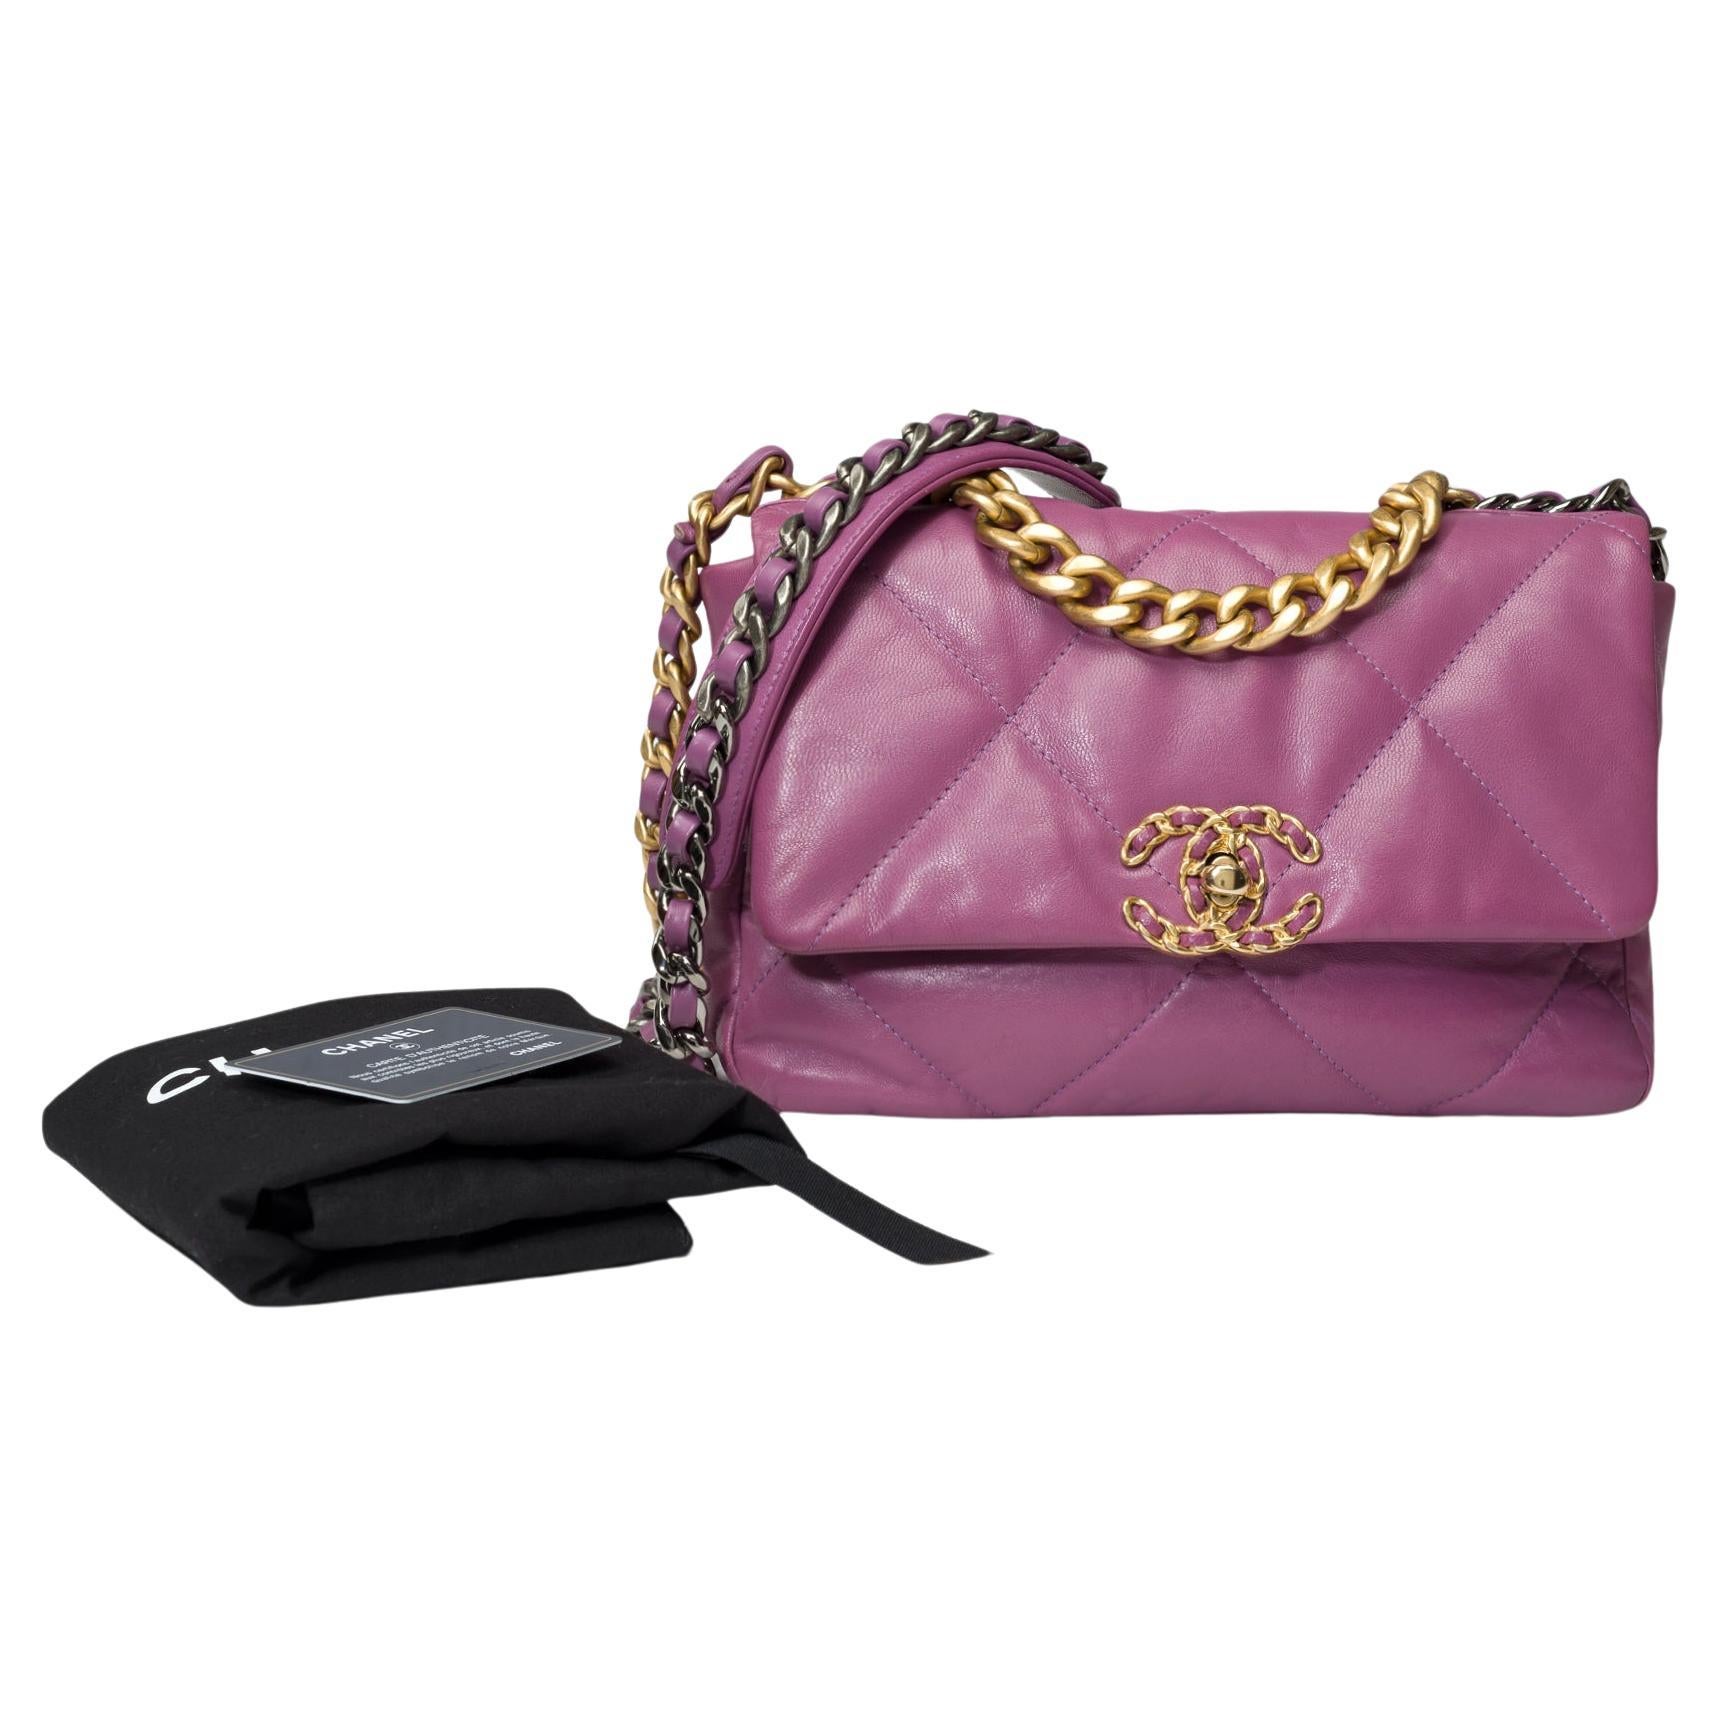 Superbe sac à bandoulière Chanel 19 en cuir matelassé violet, or mat et SHW en vente